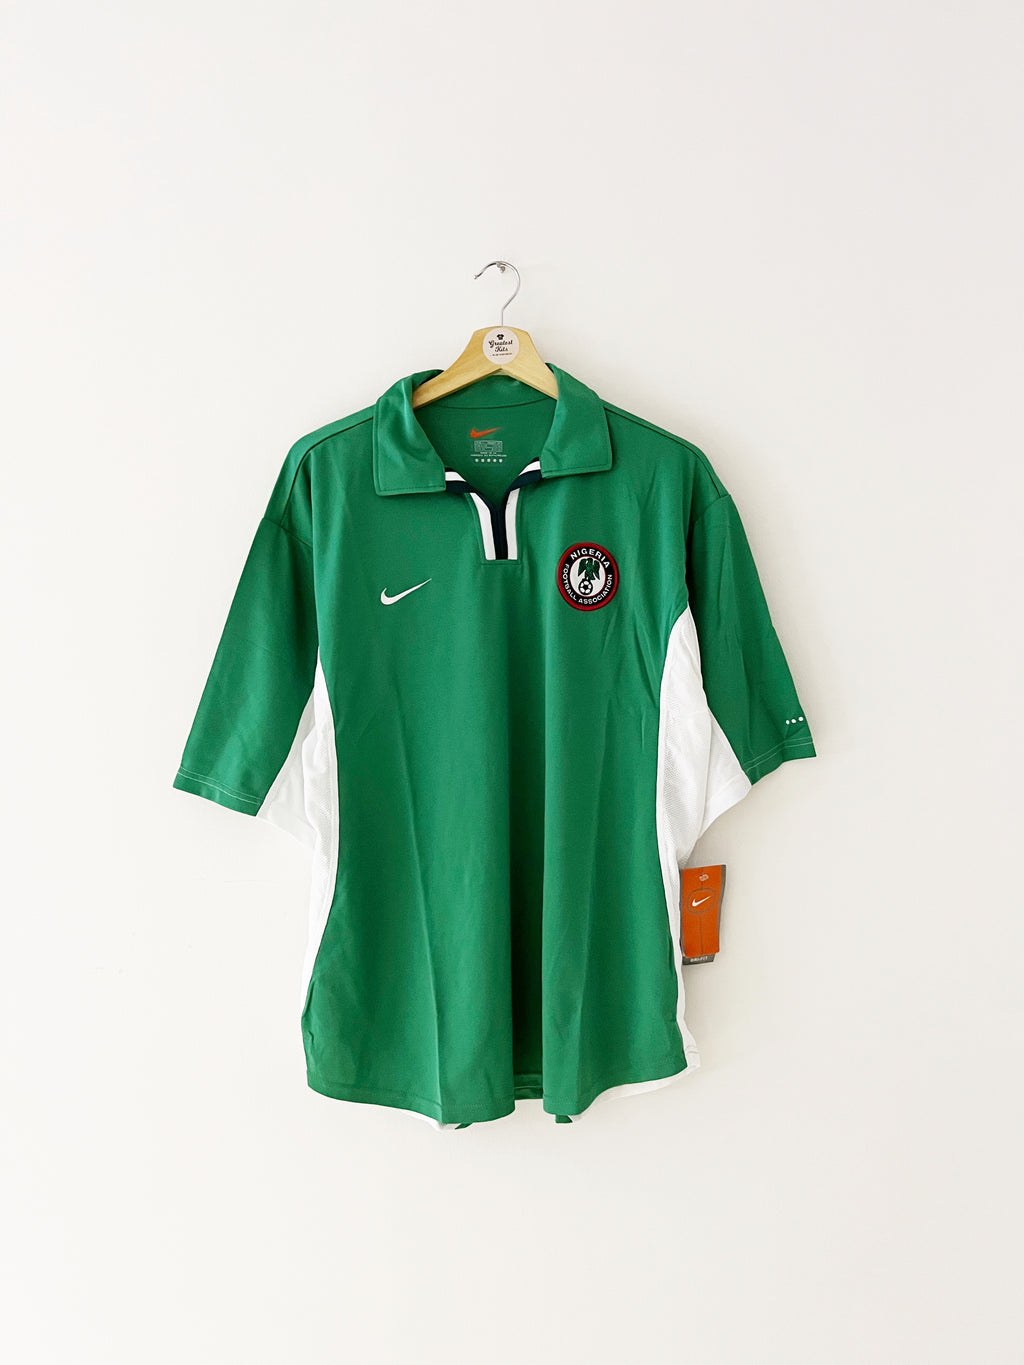 2000/02 Nigeria Home Shirt (L) BNIB